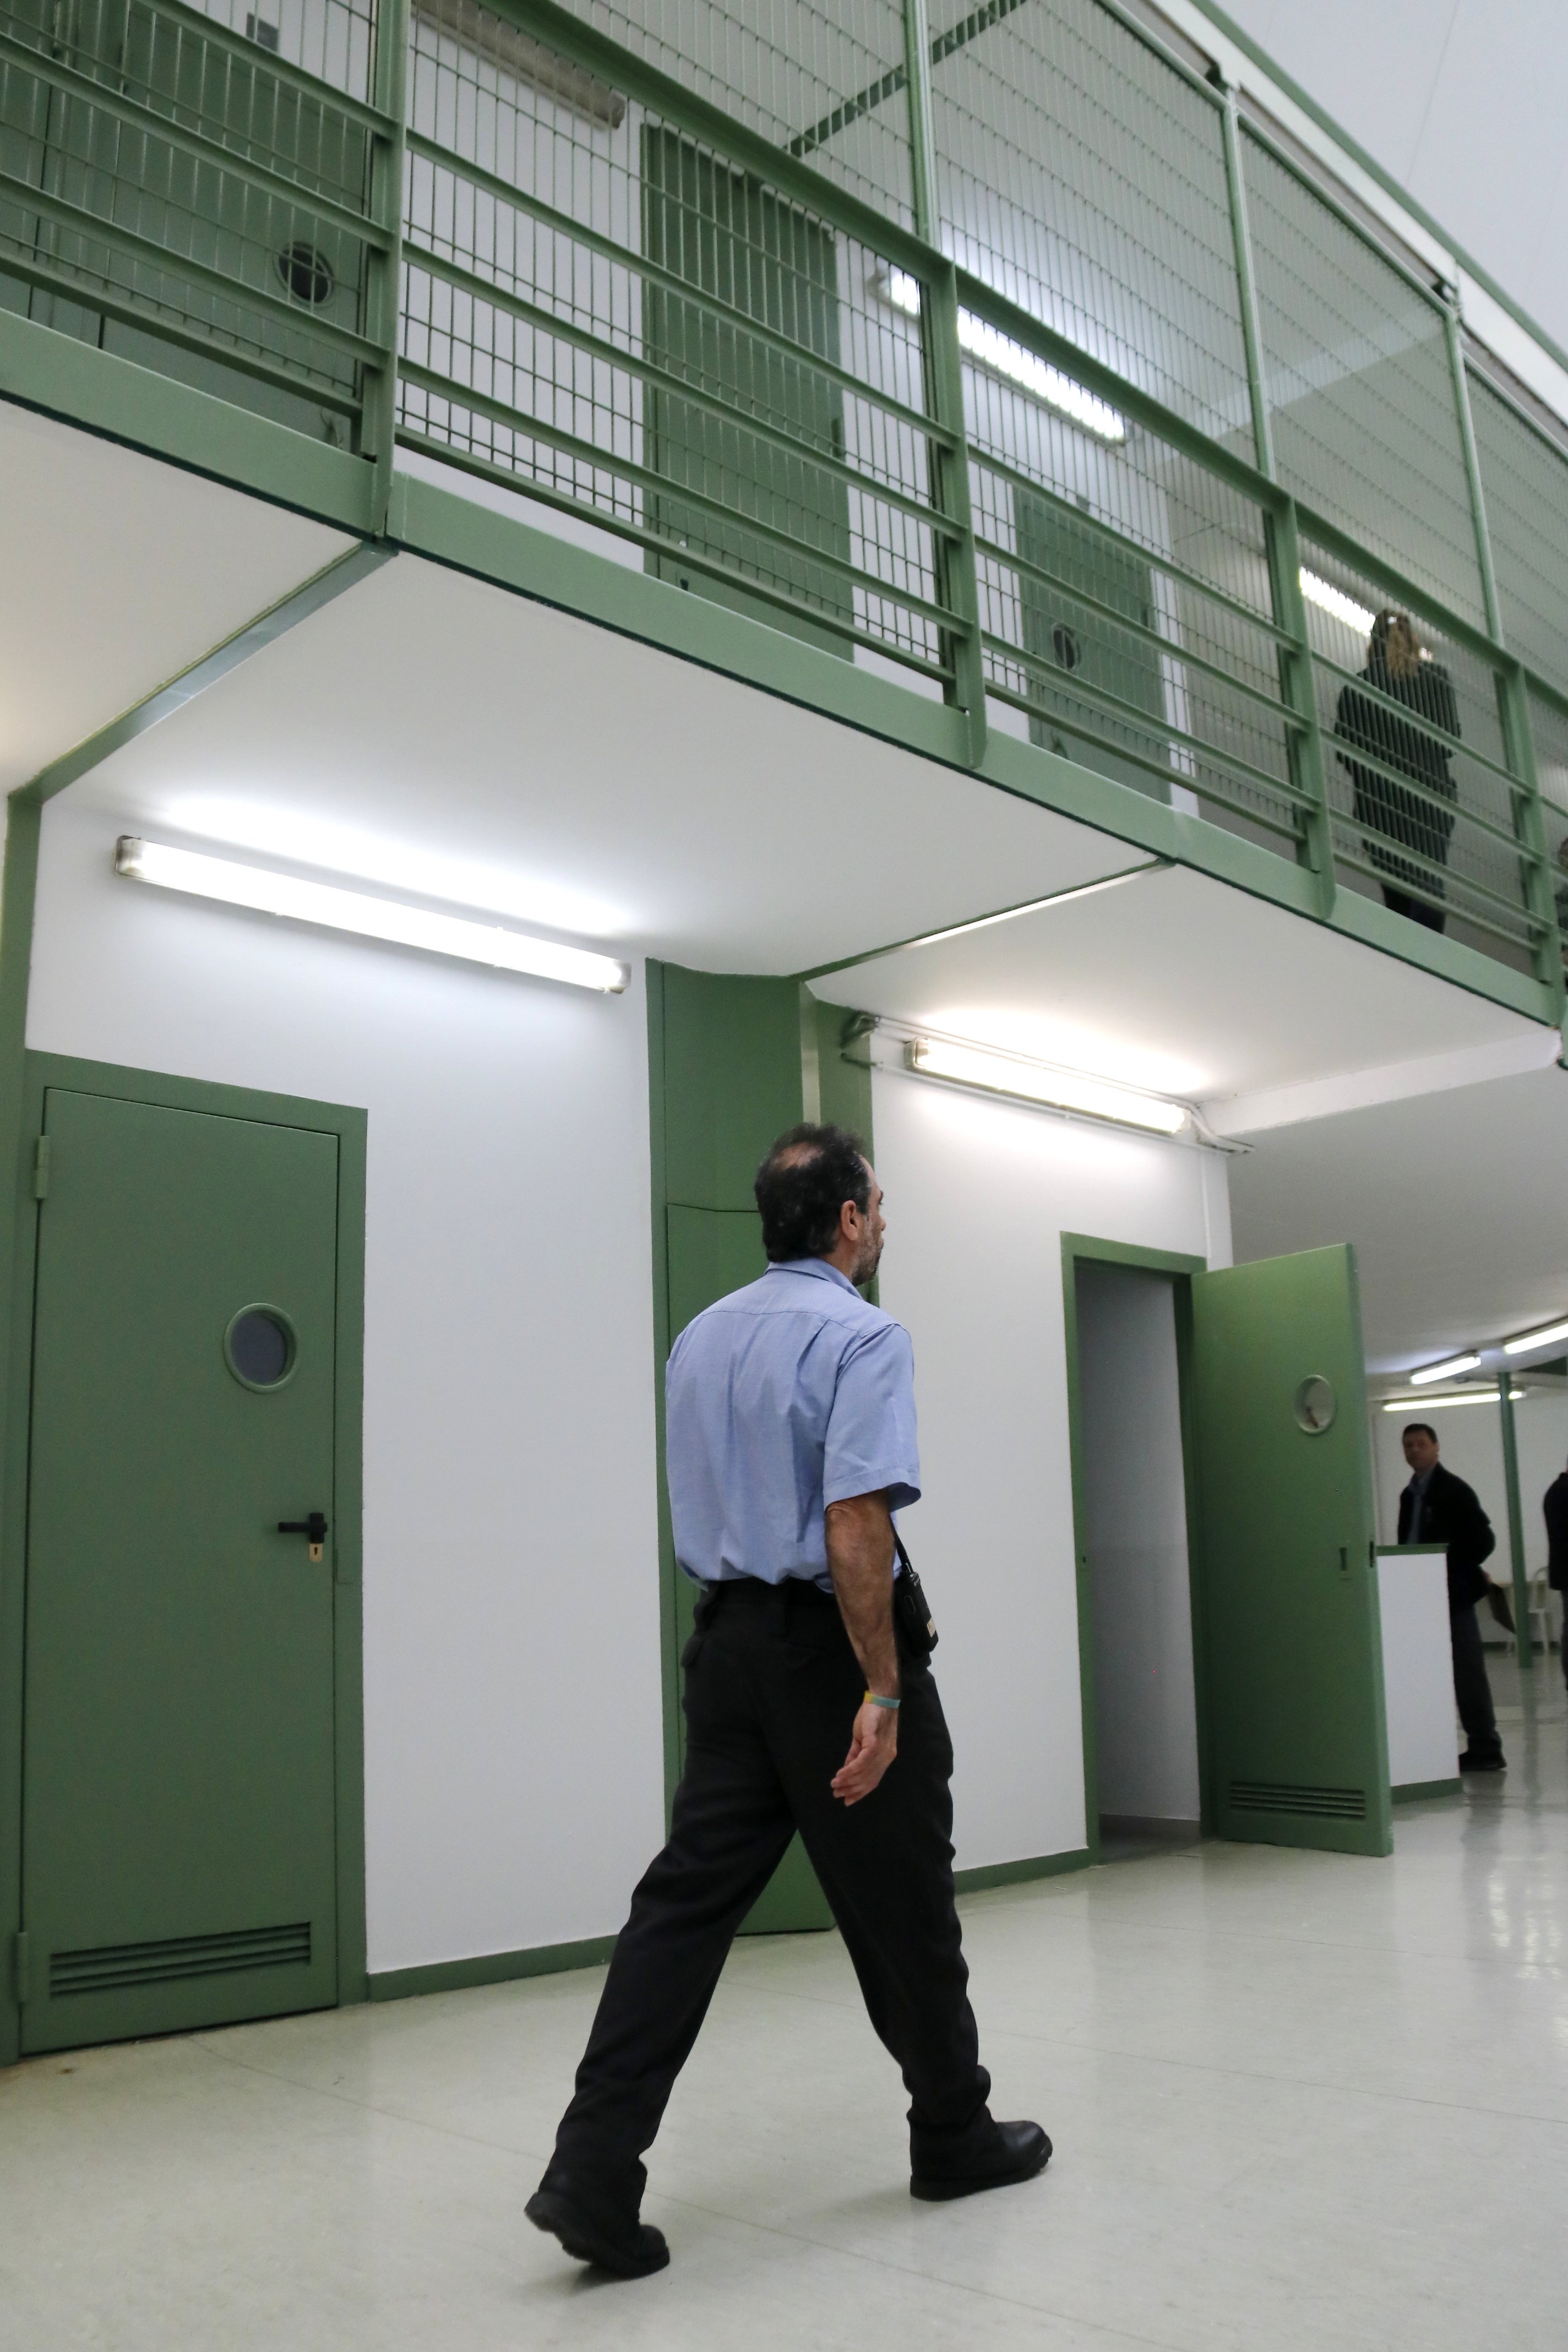 Justicia anuncia cambios en la contención a reclusos con agresividad, sin consenso